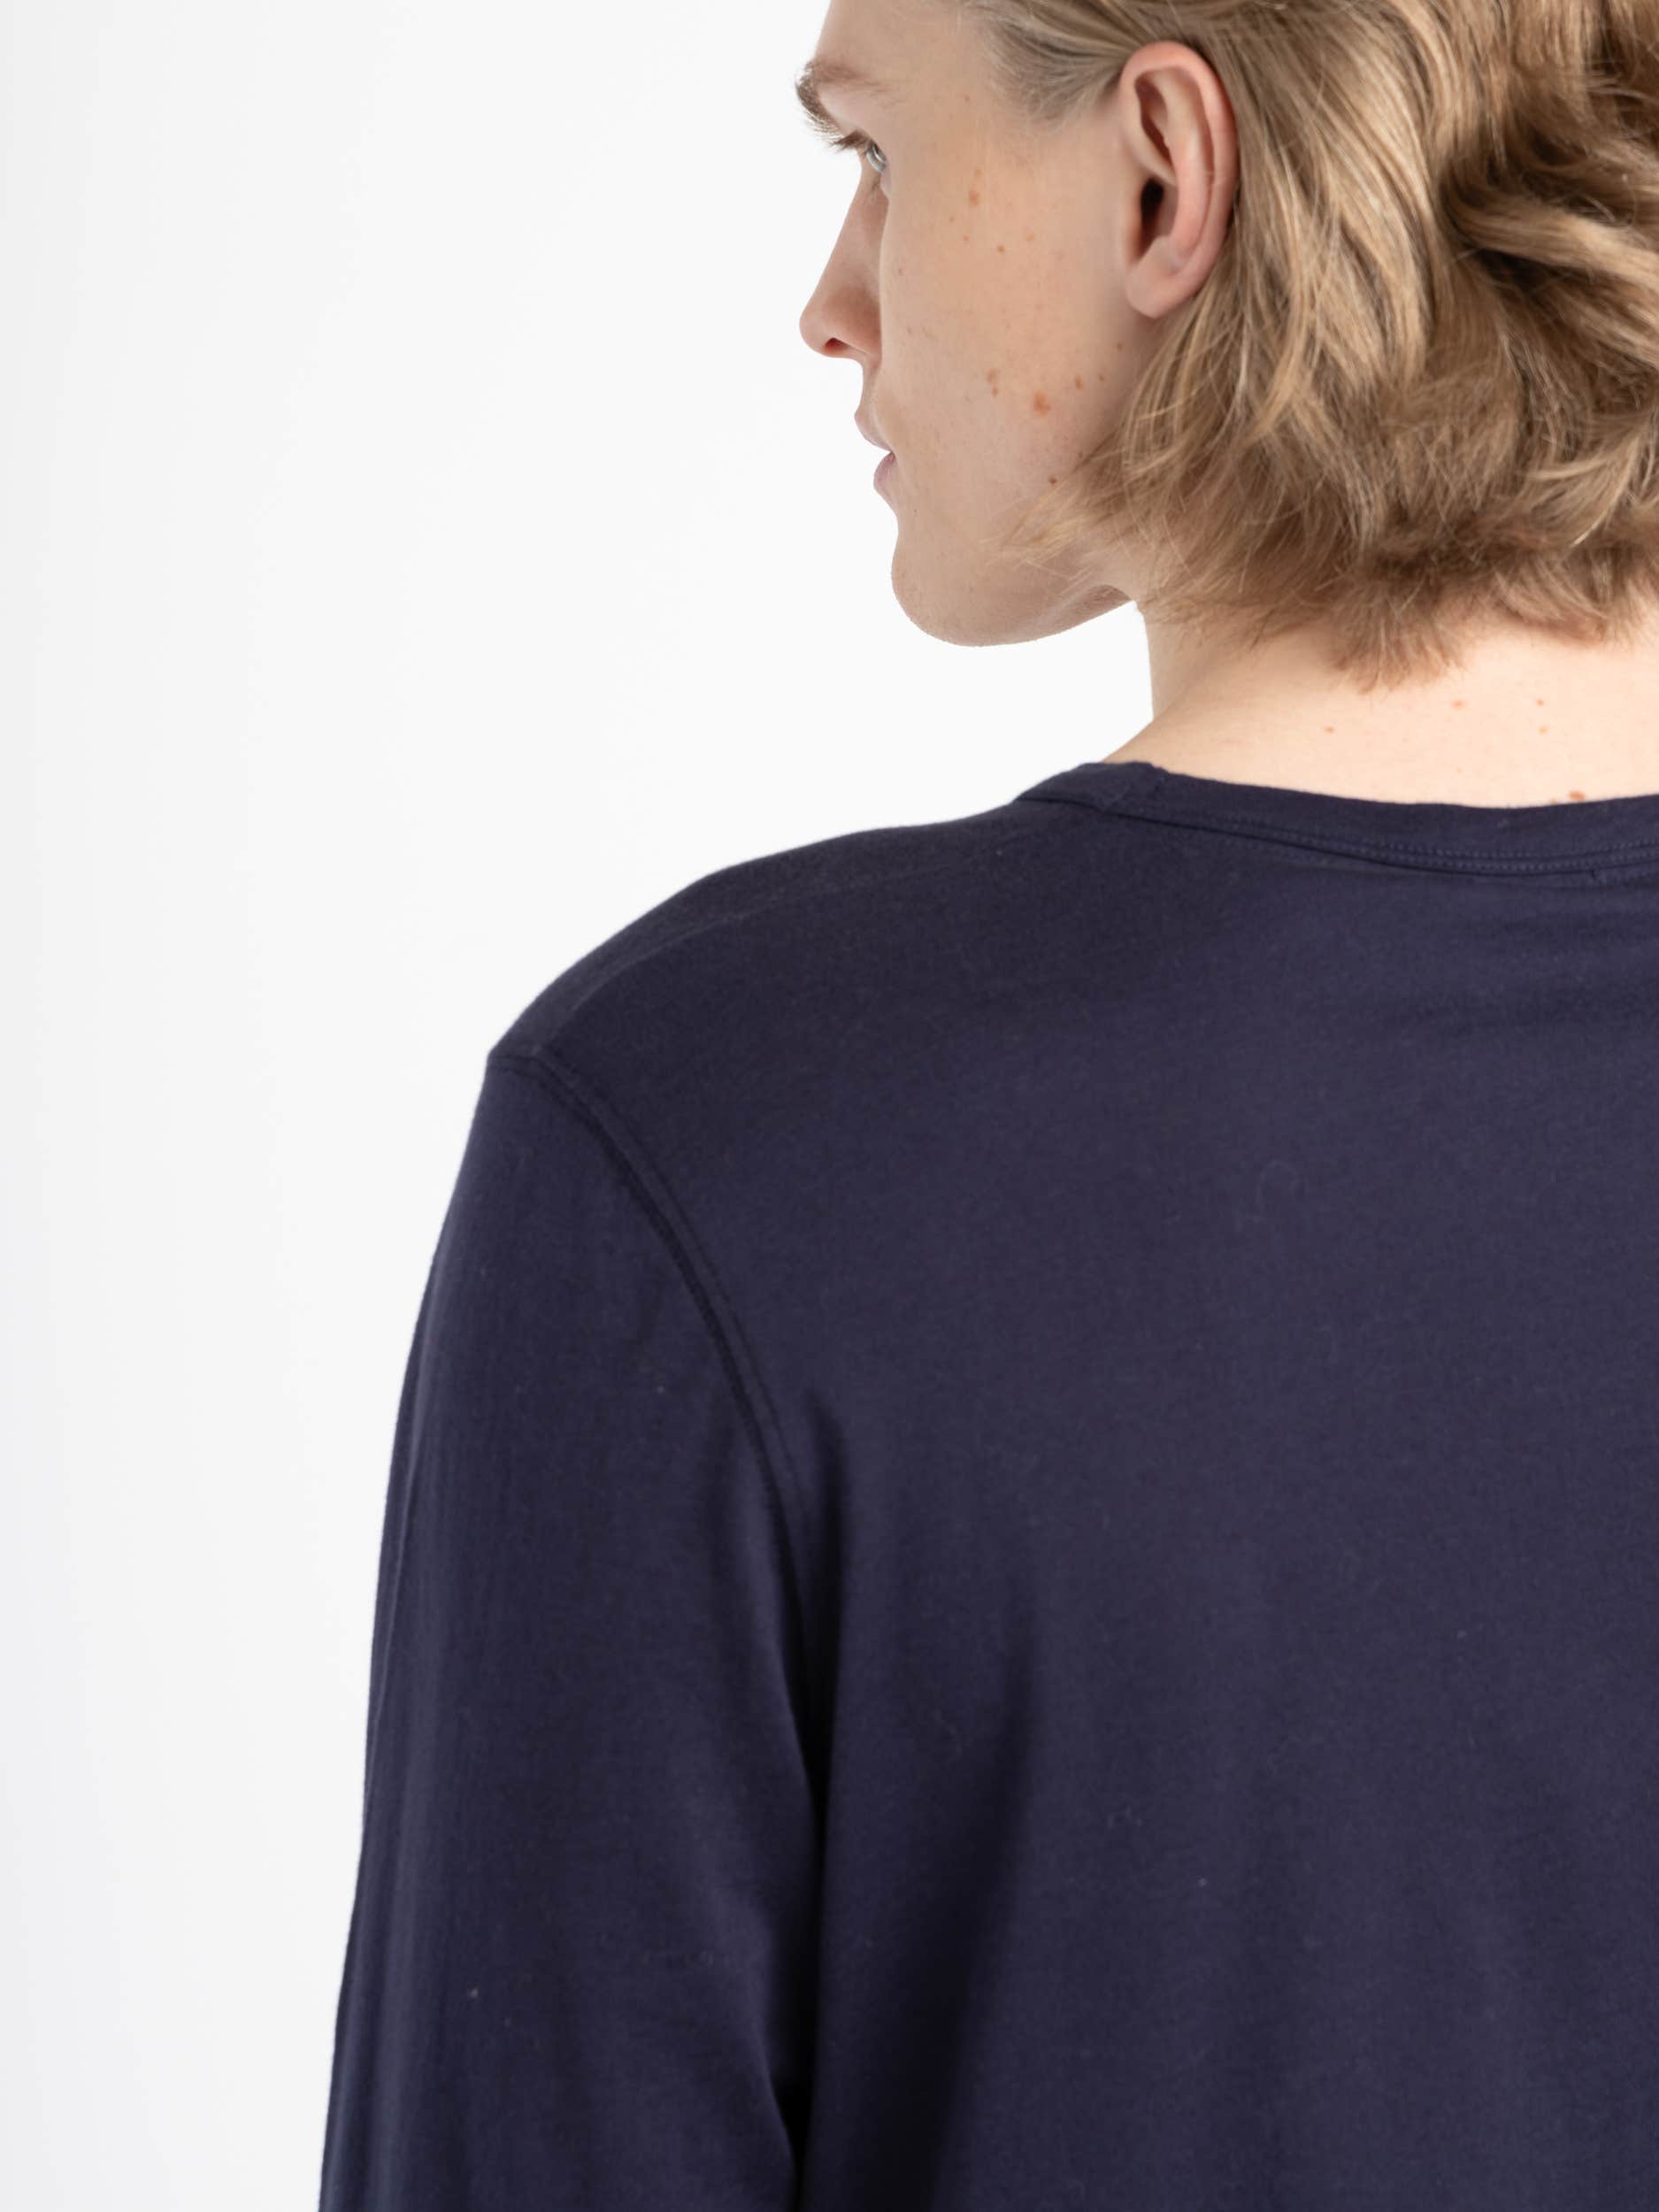 Navy Cotton/Cashmere Longshirt